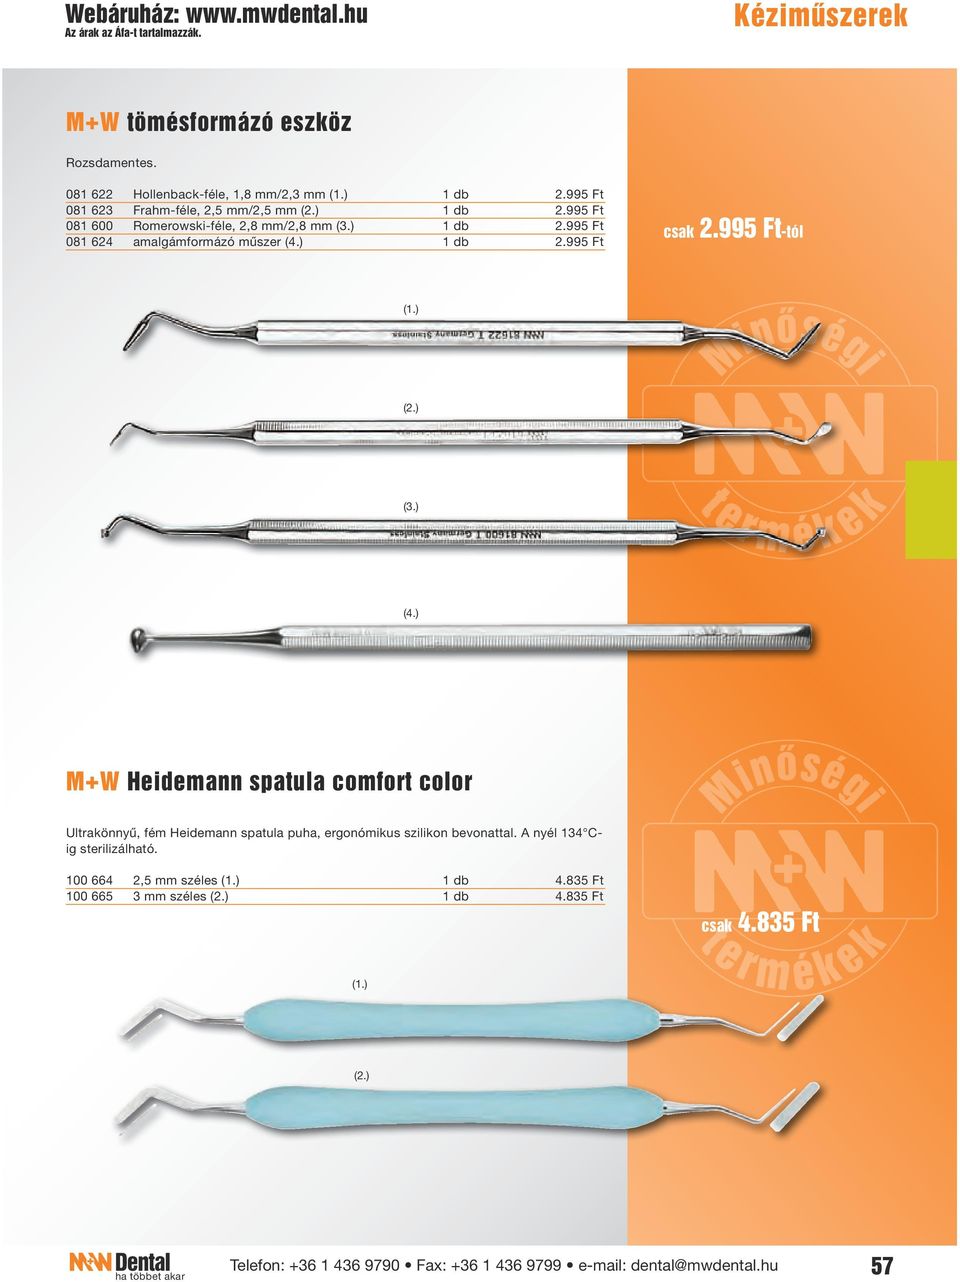 995 Ft csak 2.995 Ft-tól (4.) M+W Heidemann spatula comfort color Ultrakönnyű, fém Heidemann spatula puha, ergonómikus szilikon bevonattal.